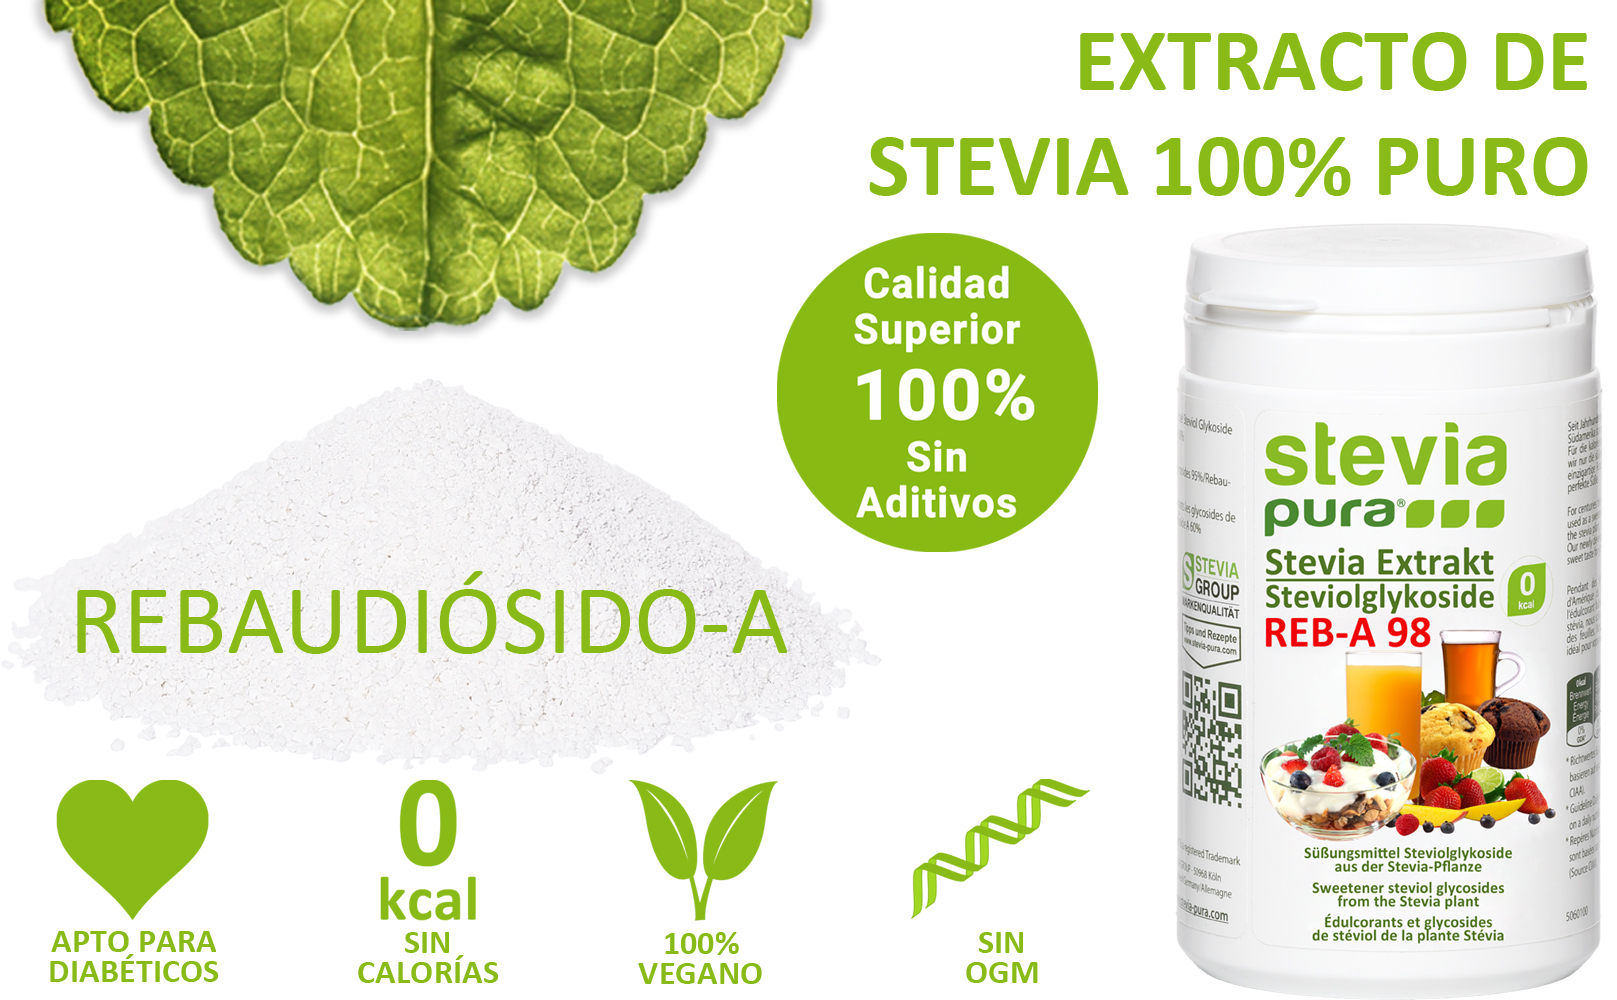 Comprar Extracto Puro de Stevia en Polvo Rebaudiósido-A 98